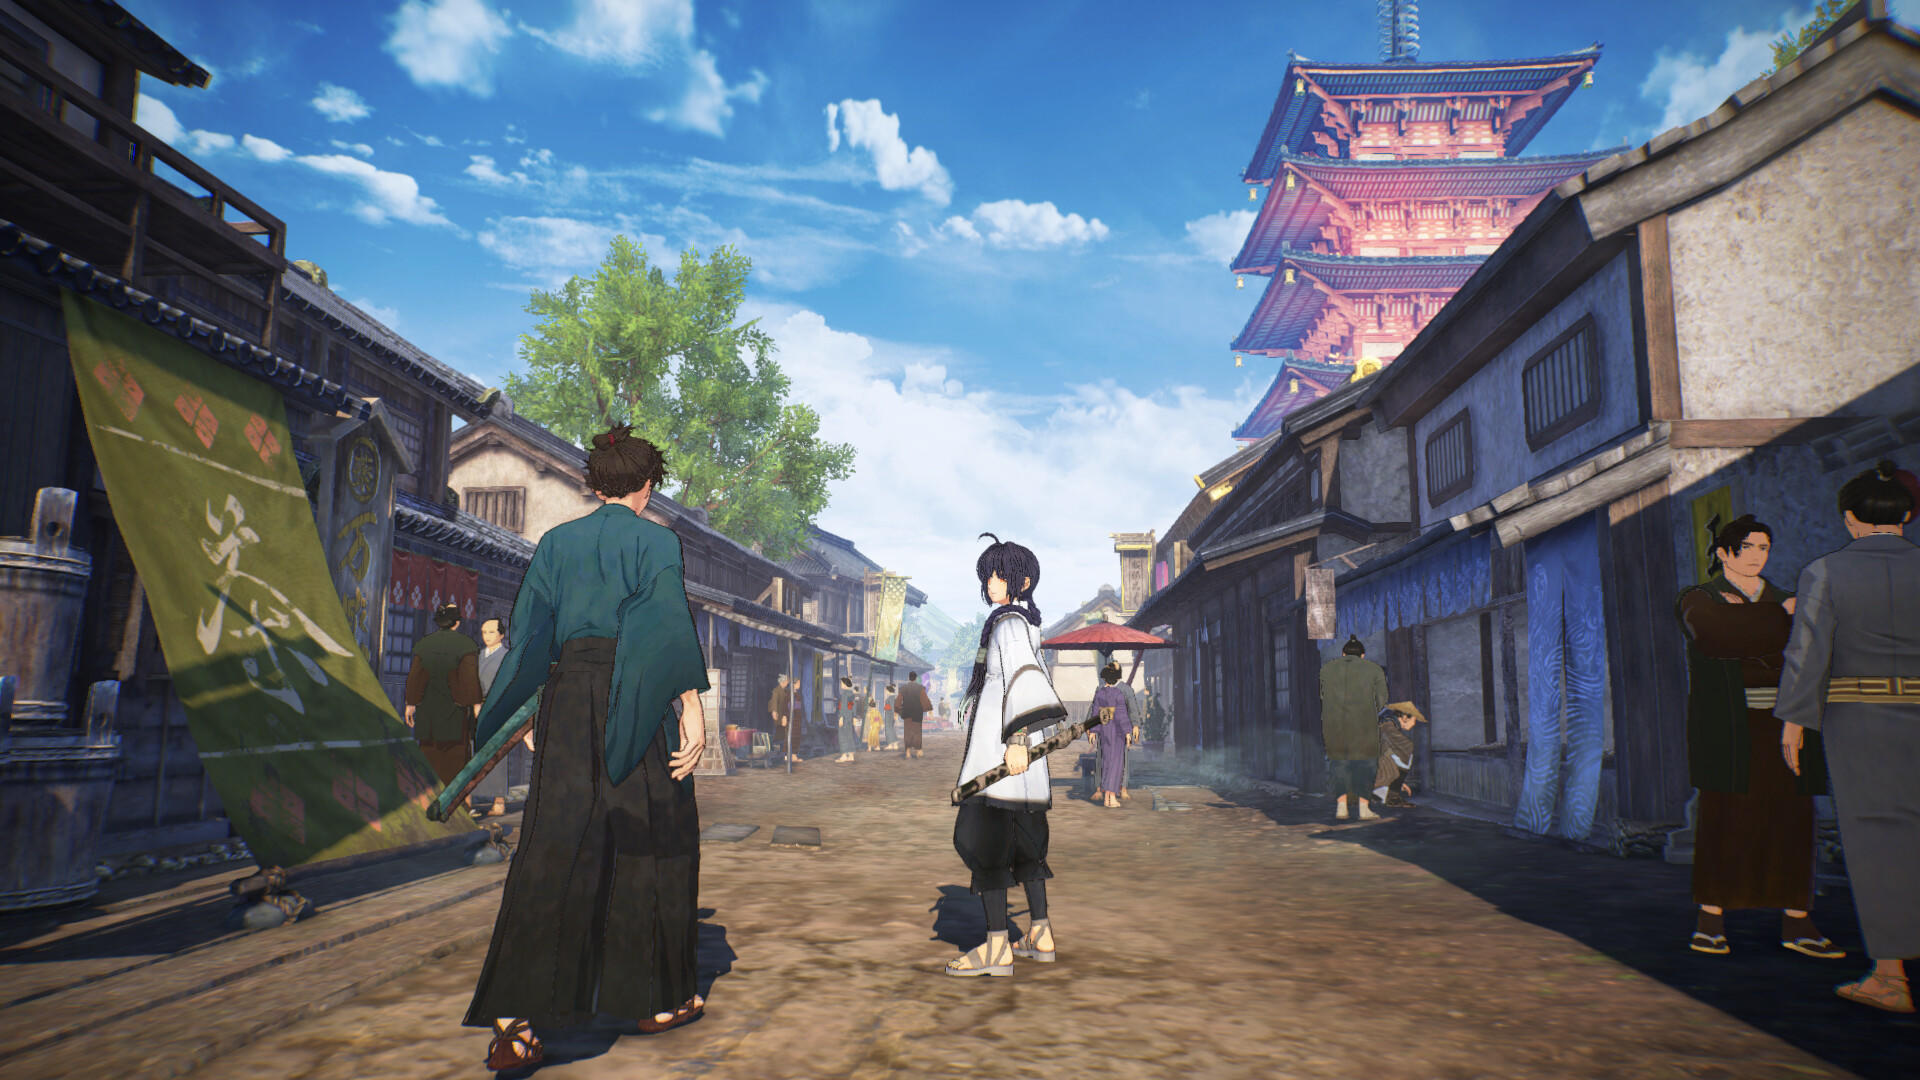 Fate/Samurai Remnant screenshot game